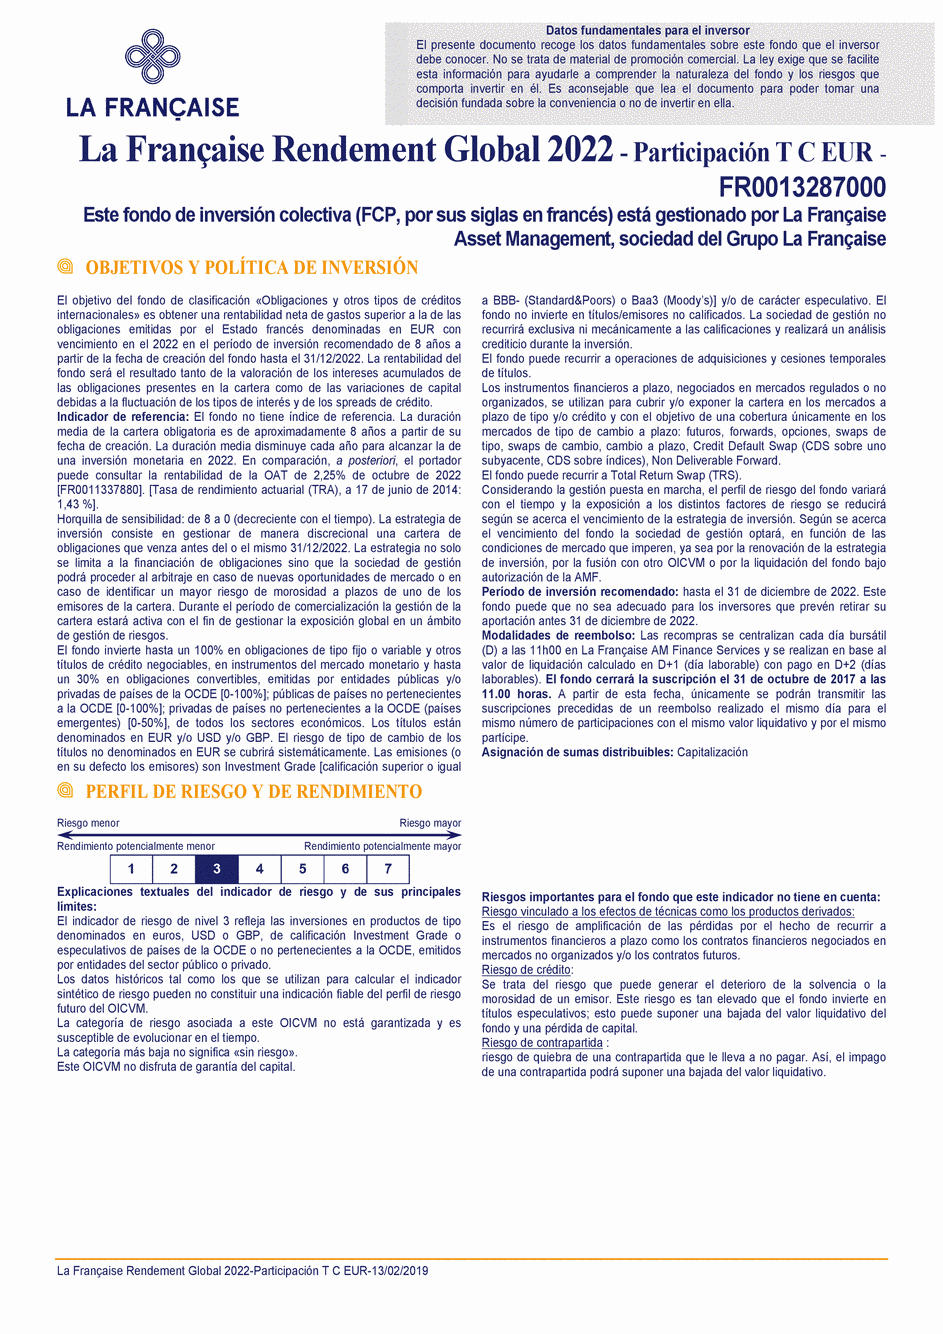 DICI La Française Rendement Global 2022 - Part T C EUR - 13/02/2019 - Spanish